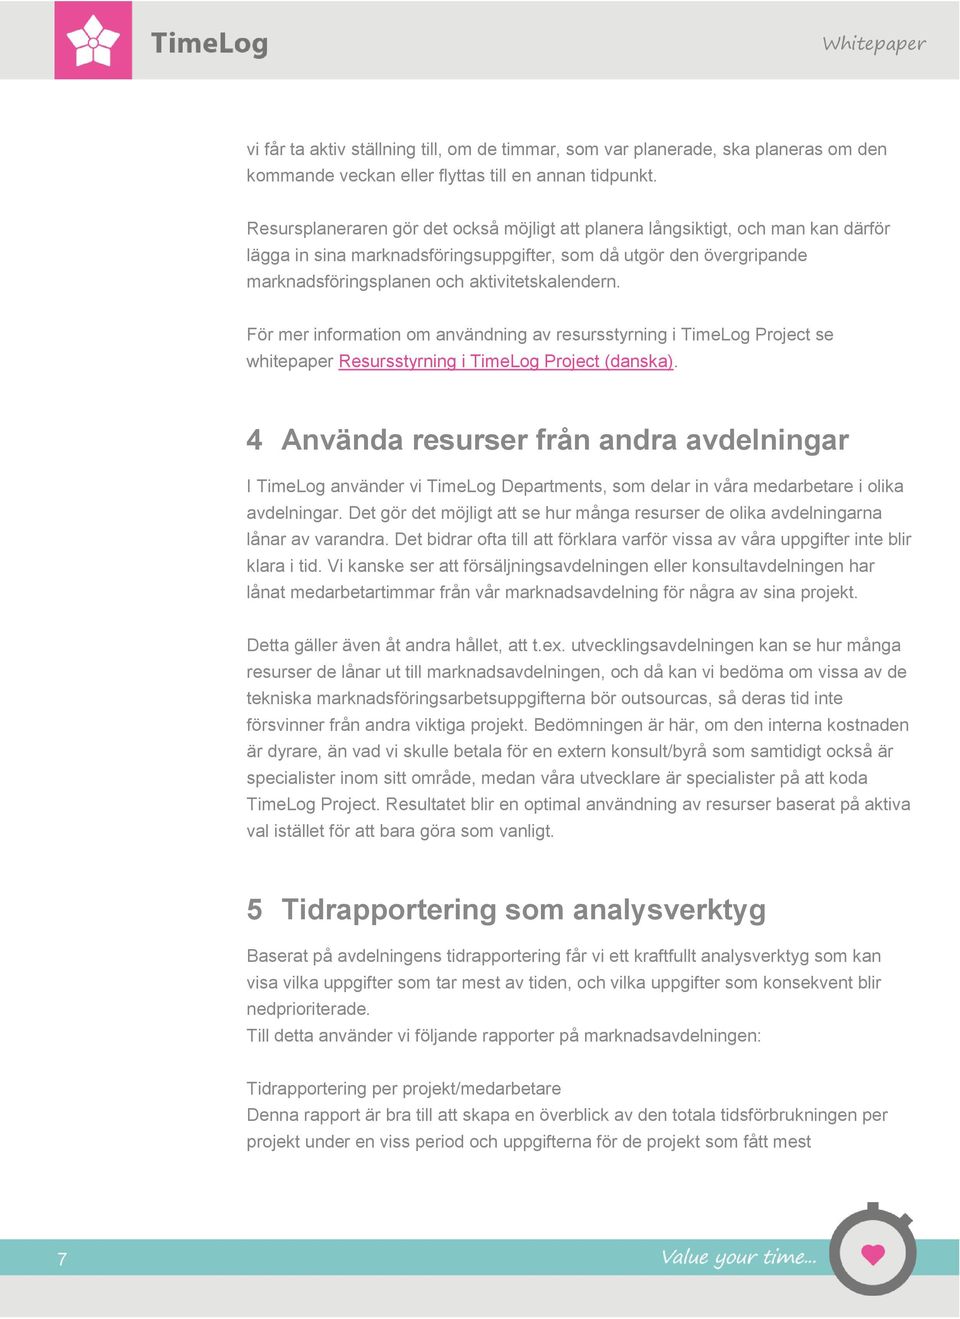 För mer information om användning av resursstyrning i TimeLog Project se whitepaper Resursstyrning i TimeLog Project (danska).